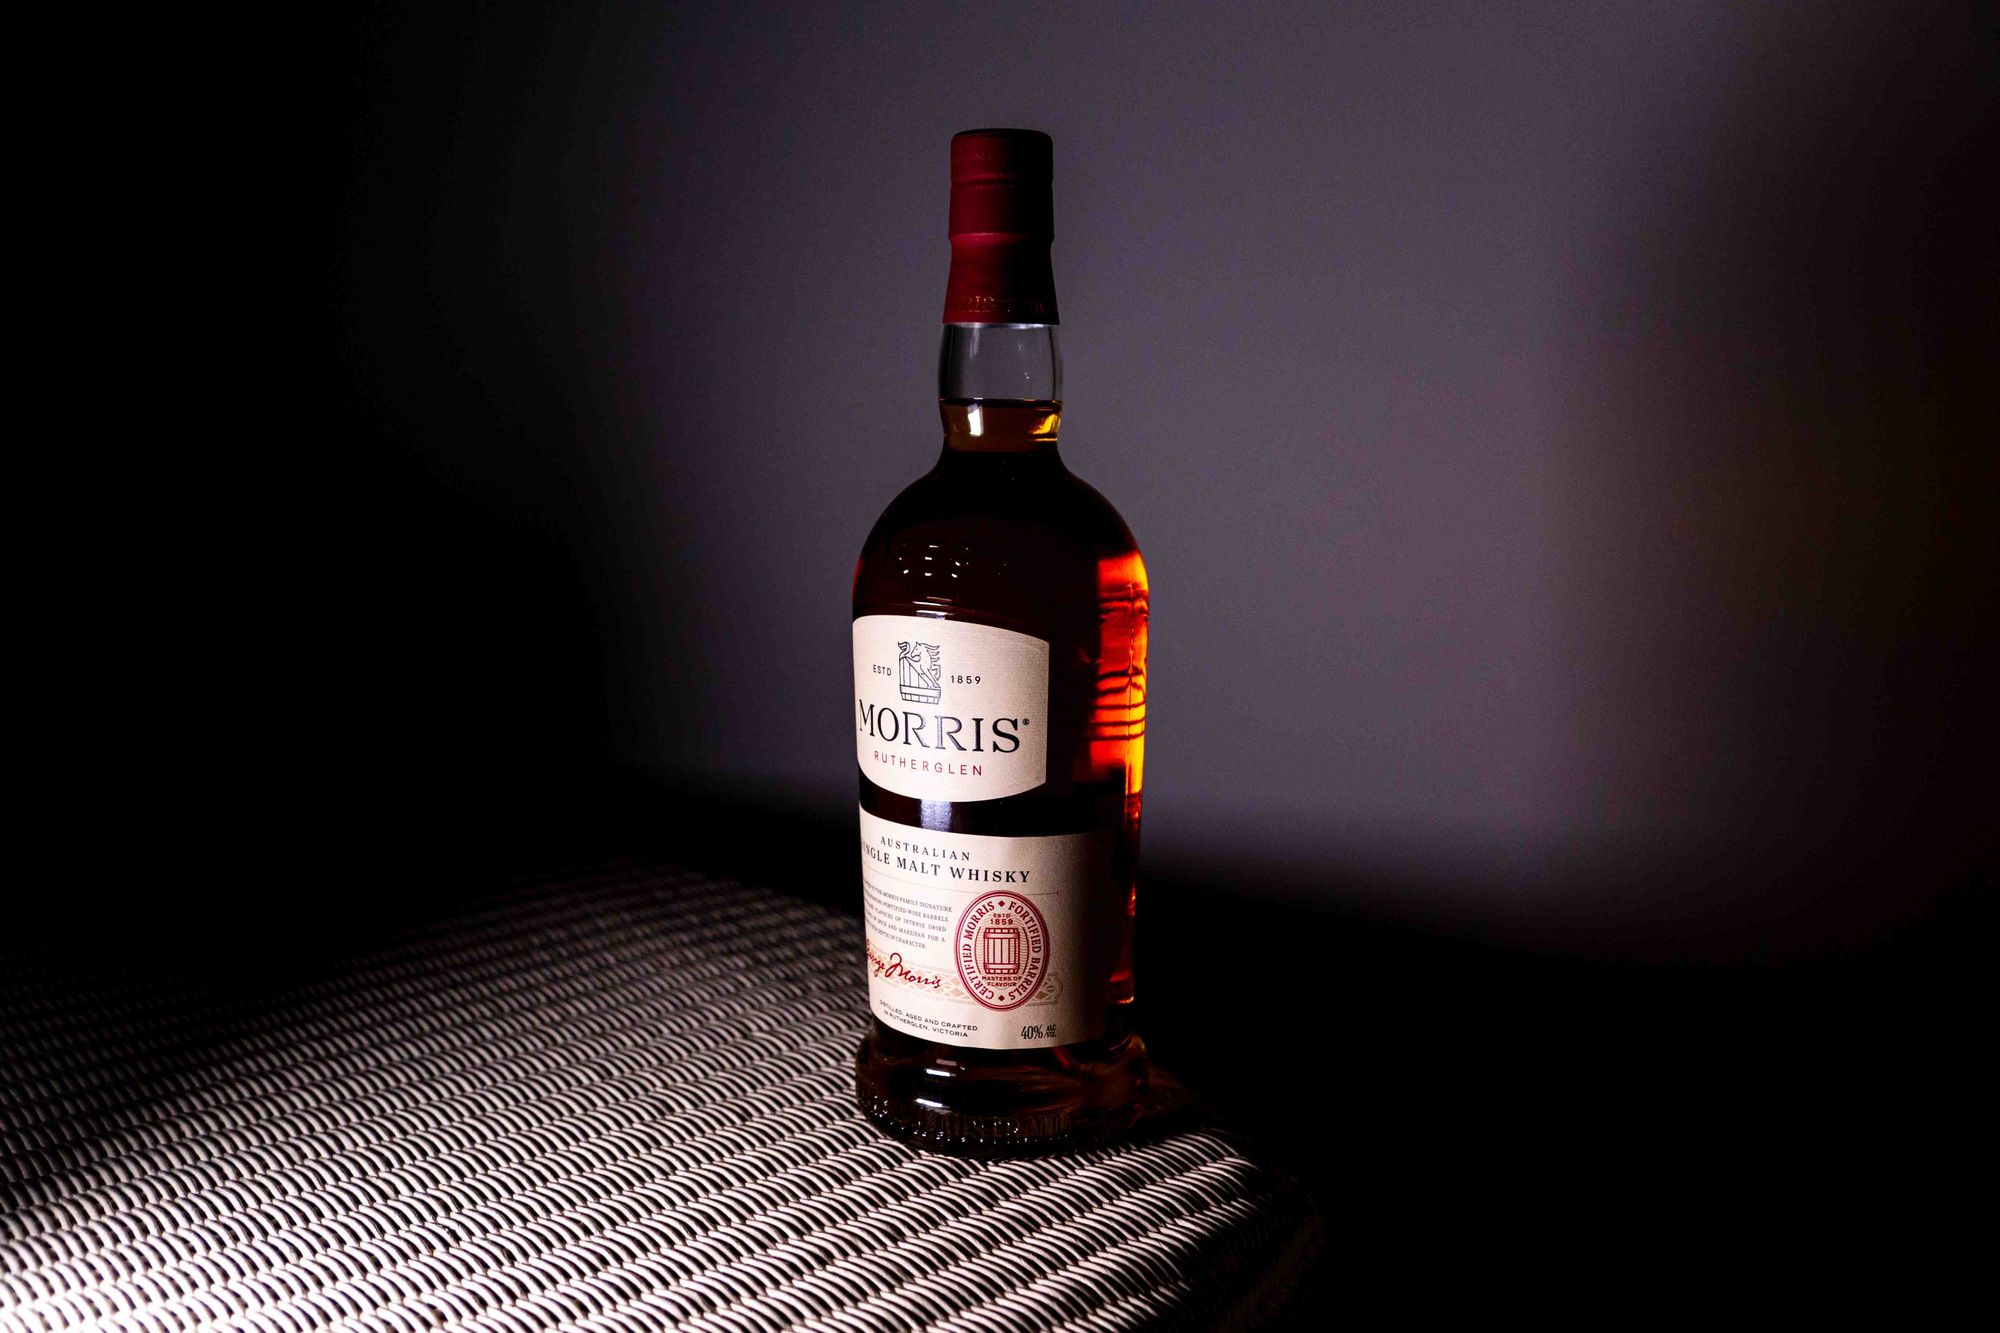 Bottles of Note: Morris Australian Single Malt Signature Whisky